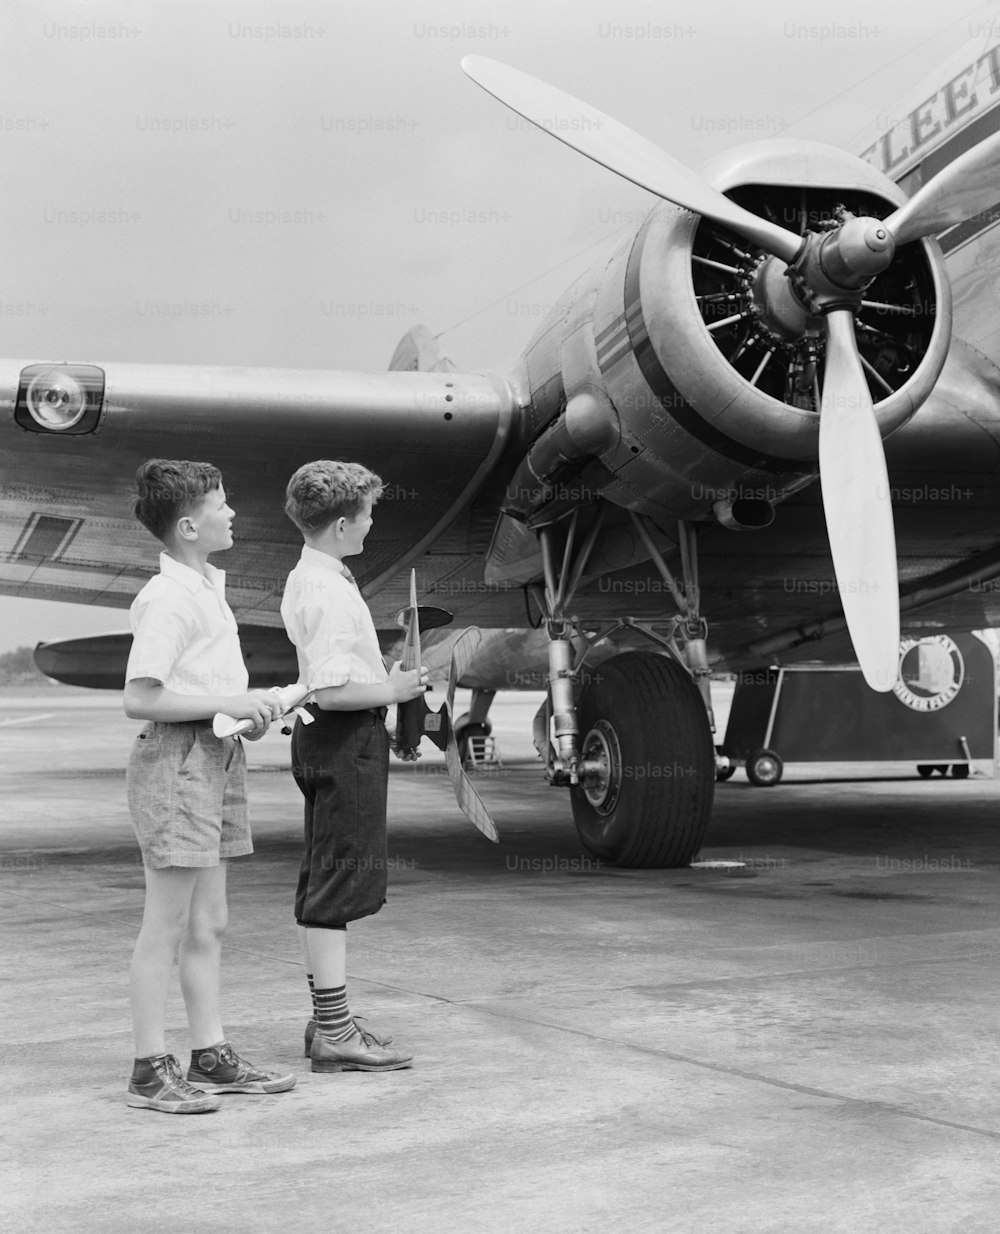 ÉTATS-UNIS - Vers les années 1940 : Deux garçons debout à côté d’un avion à hélice, tenant un avion jouet.